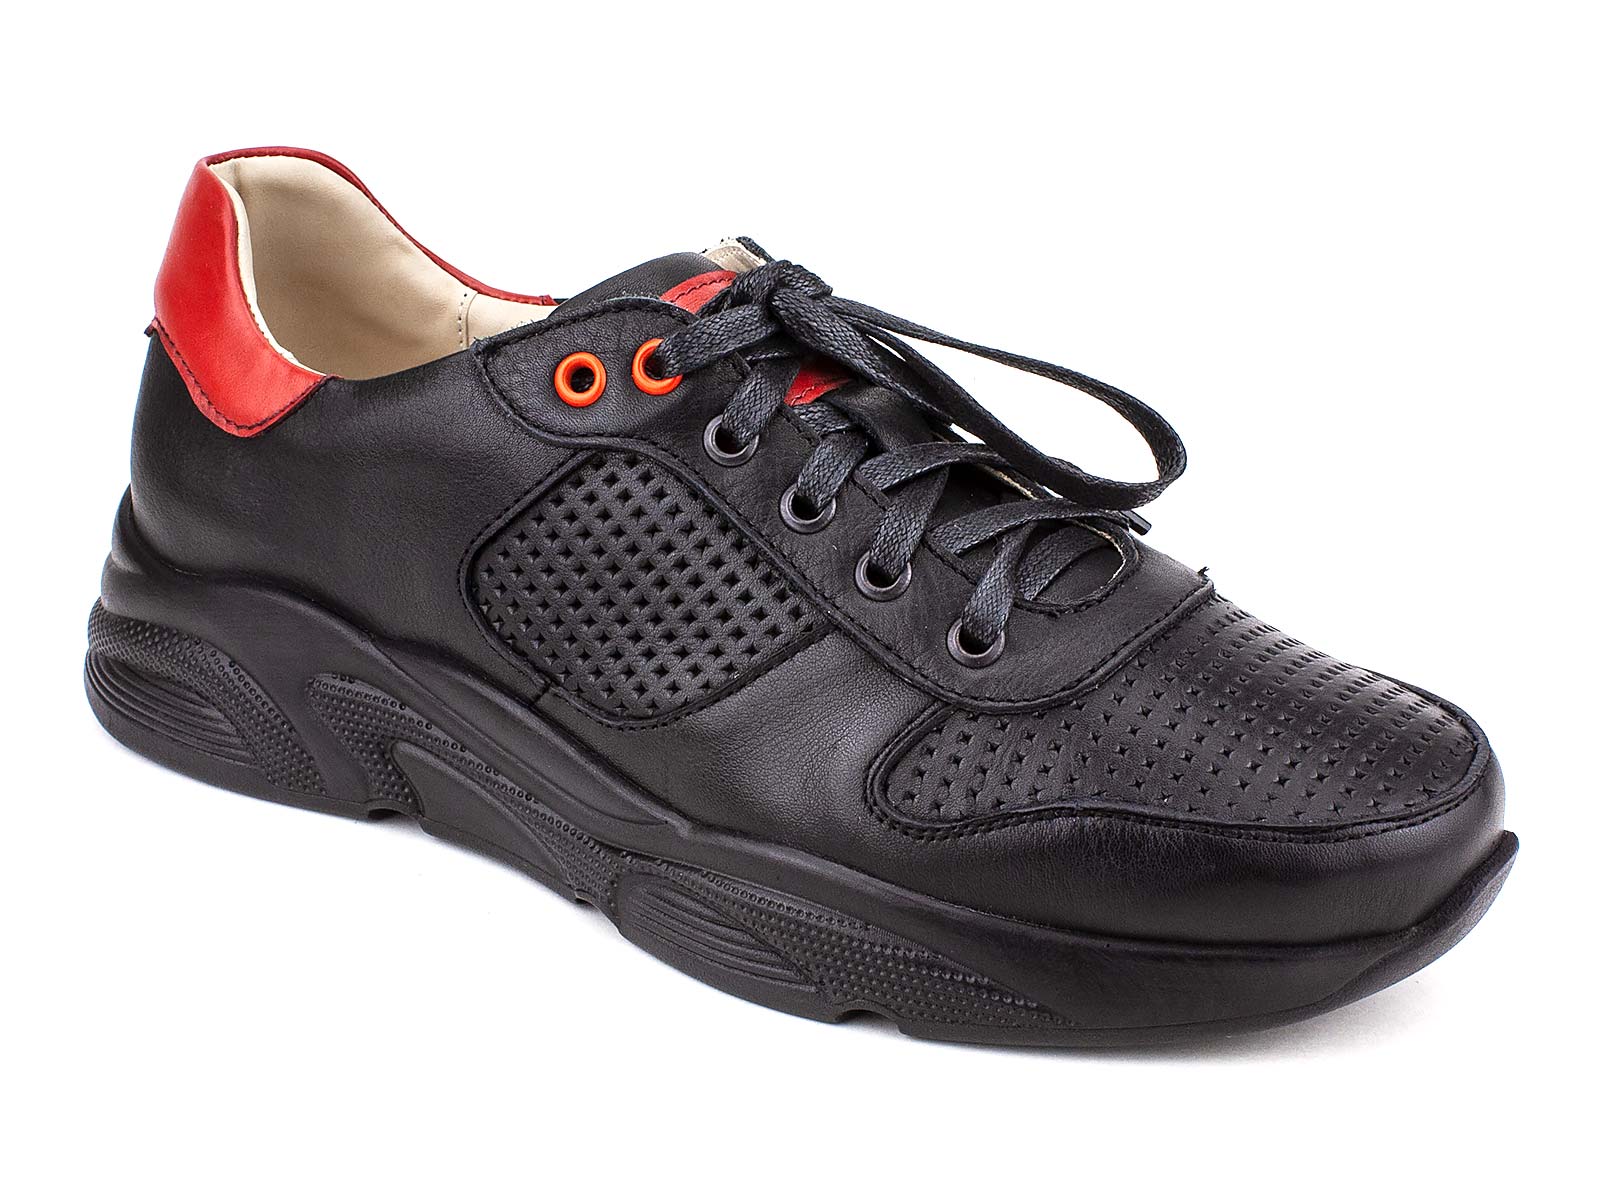 Dr.Spektor обувь. Туфли женские Dr.Spektor 915 черный. Ортопедическая обувь доктор Спектор для женщин. Купить обувь доктору